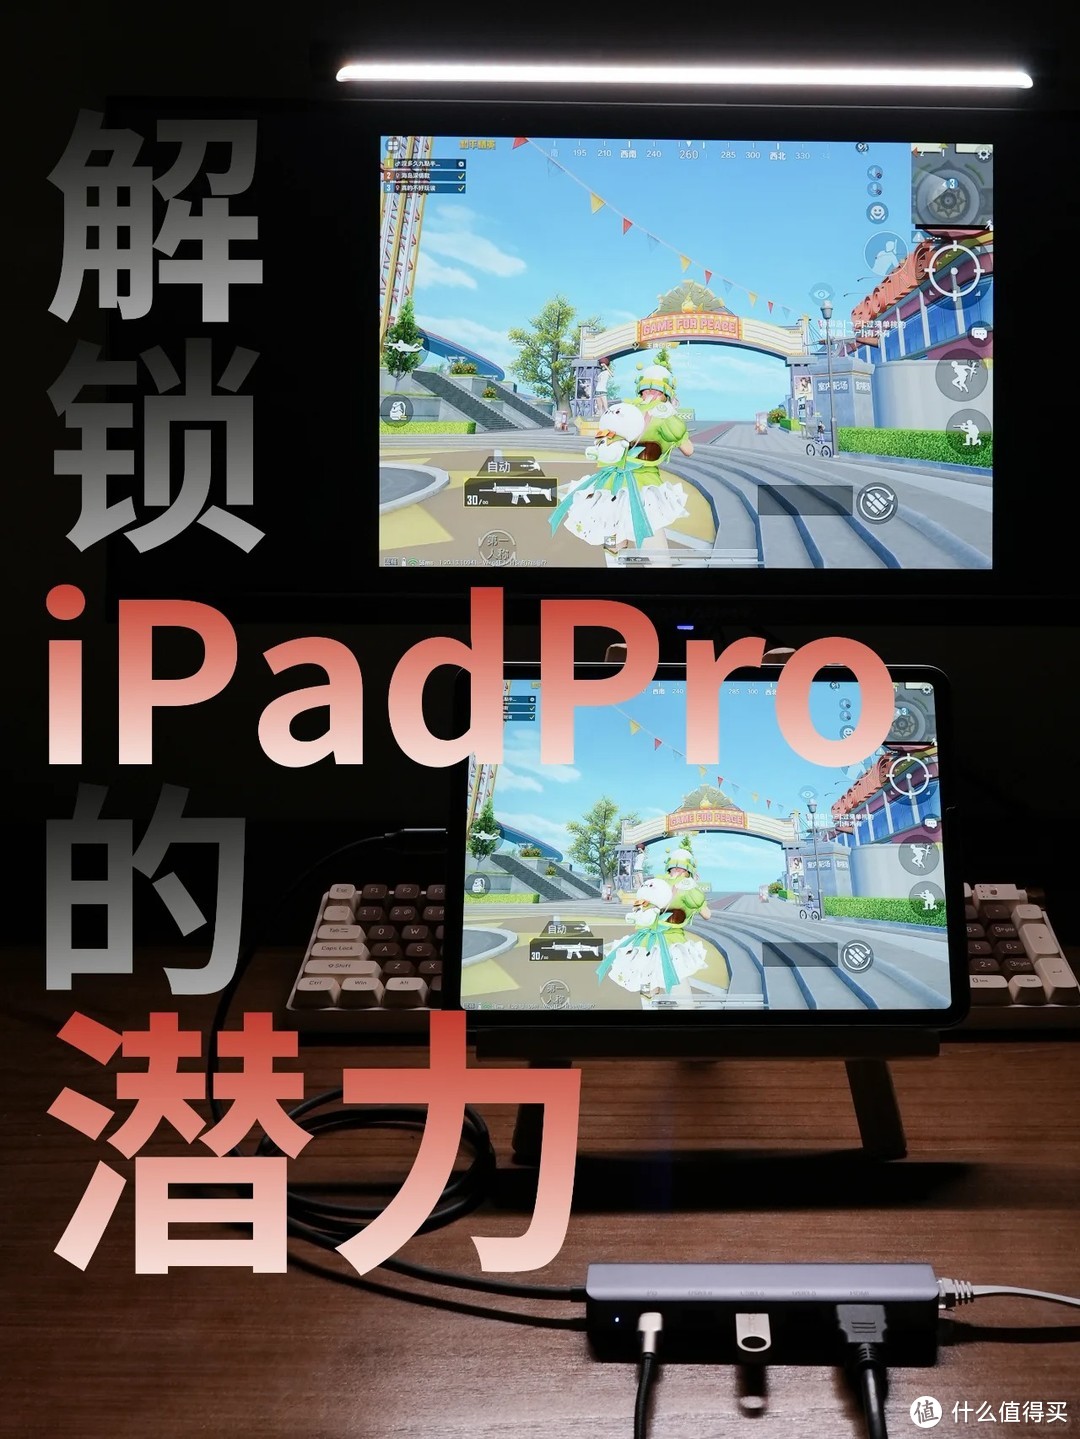 一个配件解锁iPad Pro无限潜能——阿卡西斯6合1扩展坞